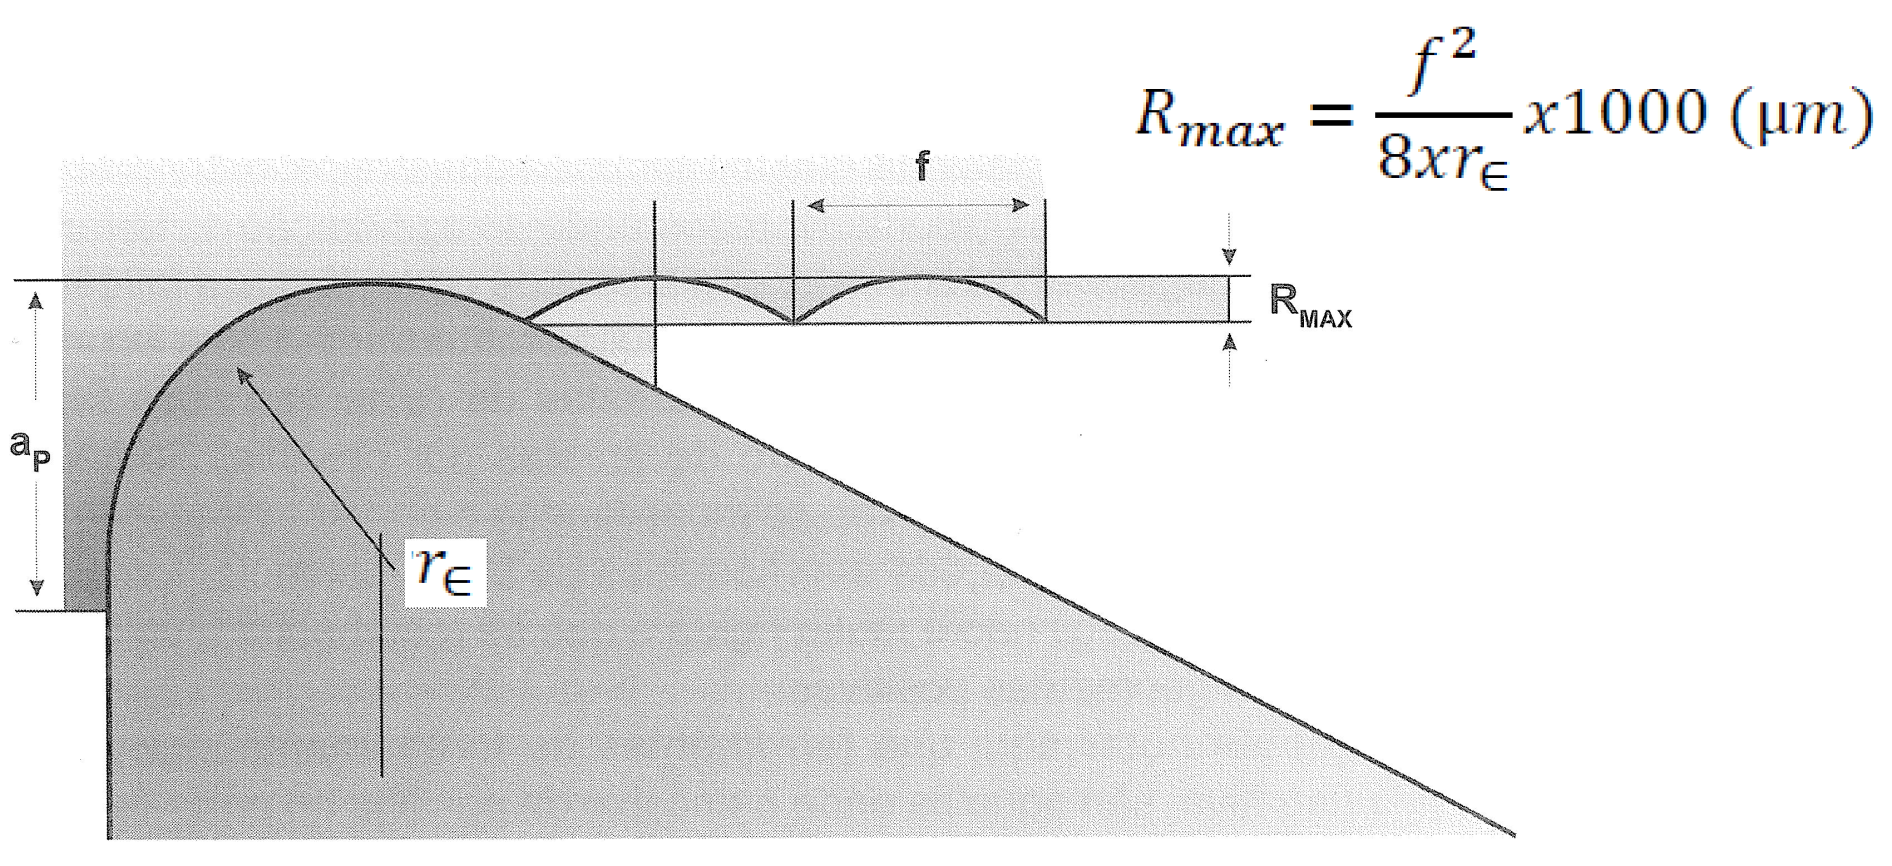 Rugosidade Ra e Rt (Rmax) em função do avanço Rugosidade teórica de uma